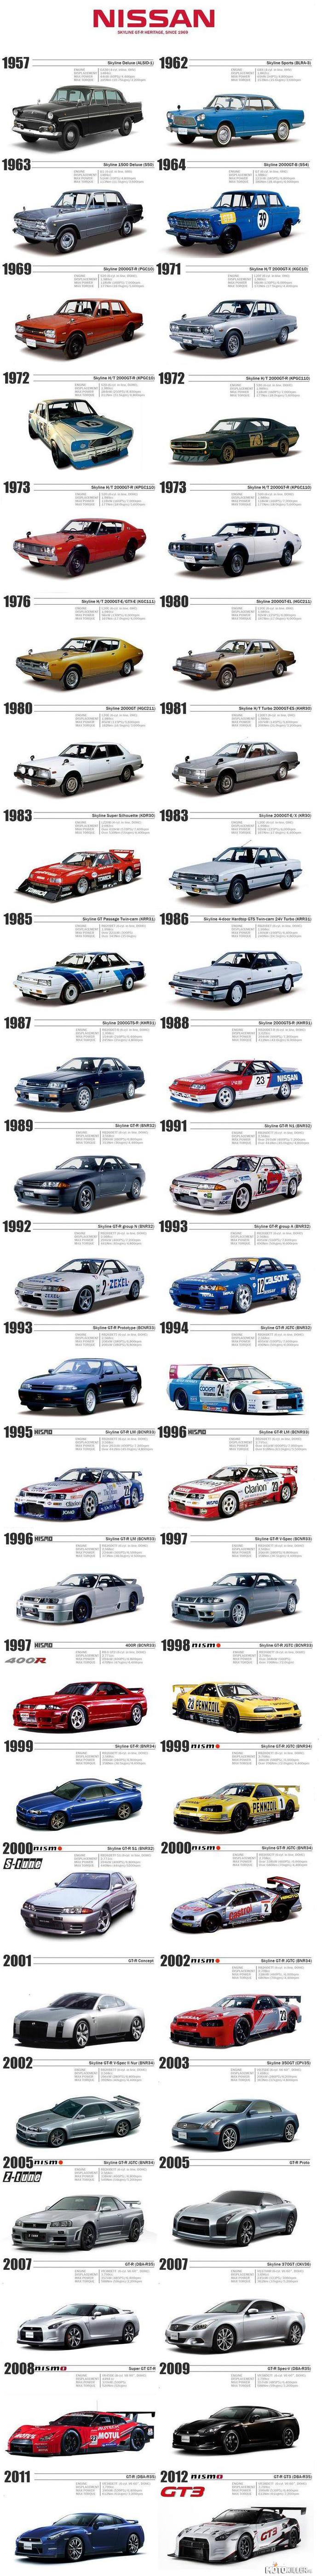 Rozwój Nissana – Od 1957 do dziś i jest widać postęp. 